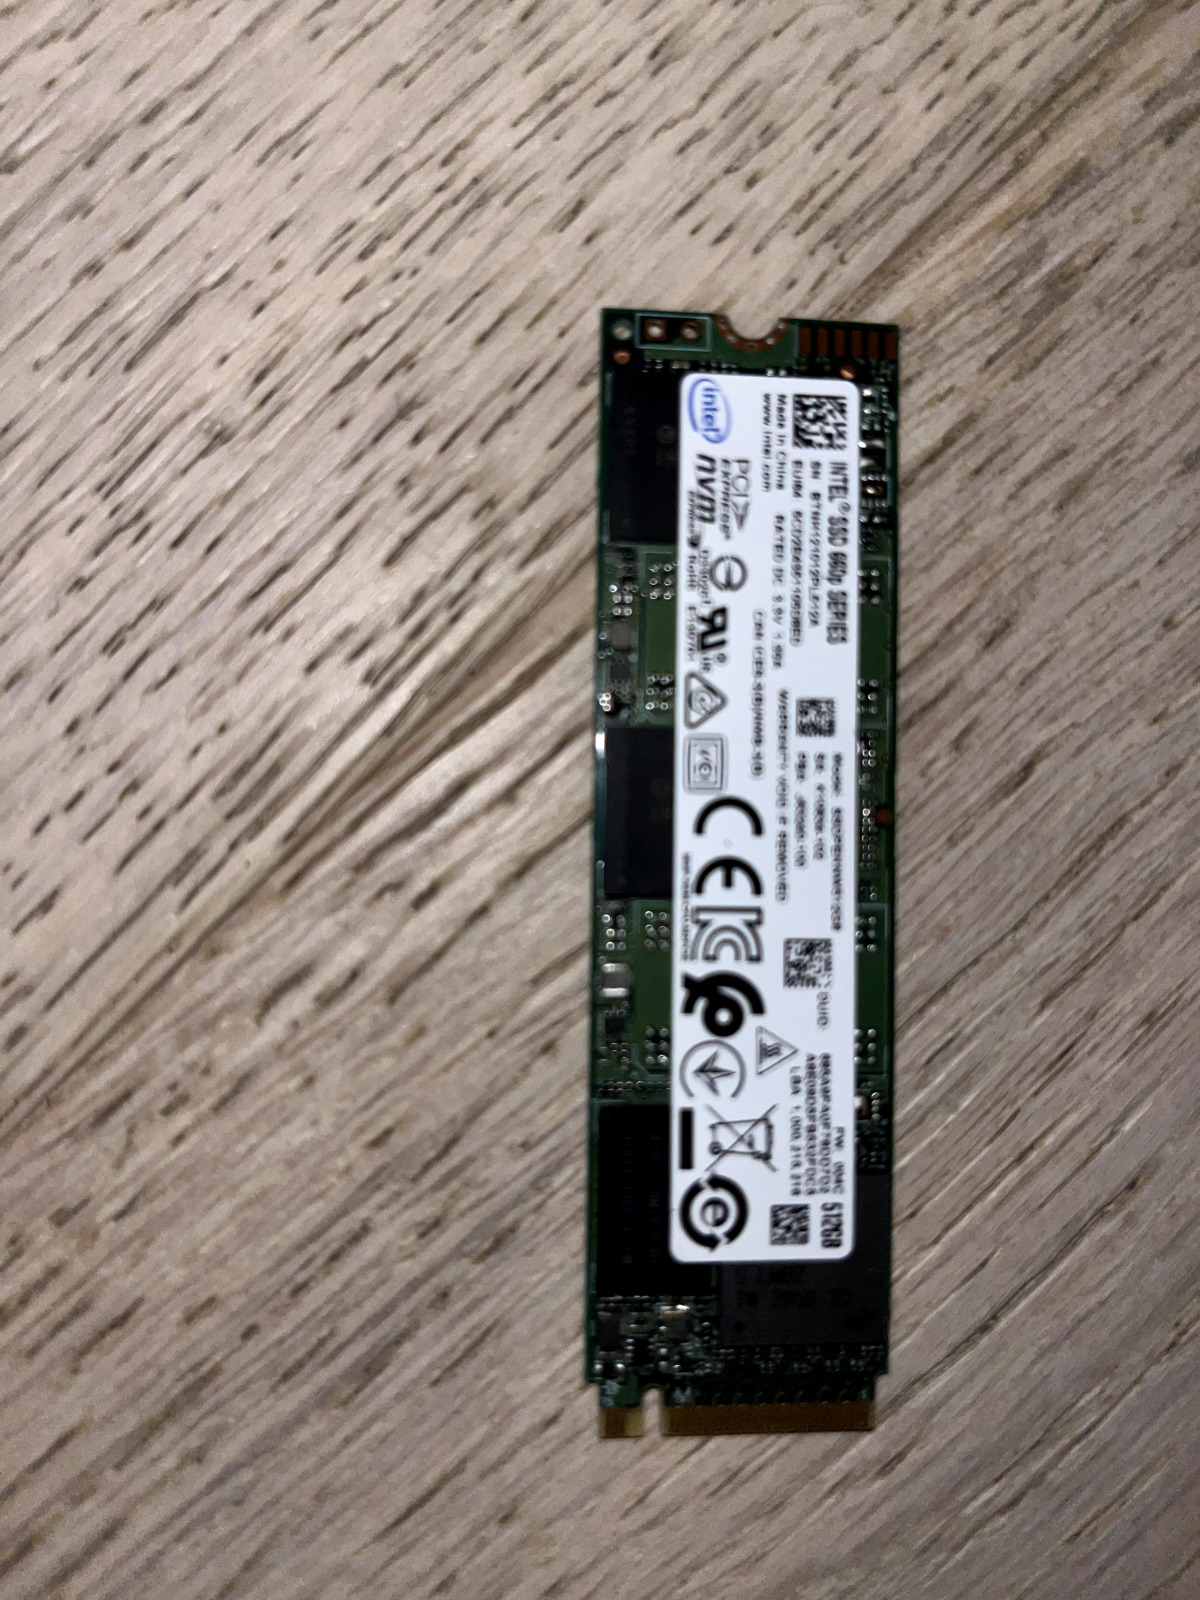 Intel 660p Series 512GB M.2 NVMe PCIe Gen3x4 SSD (SSDPEKNW512G8H)